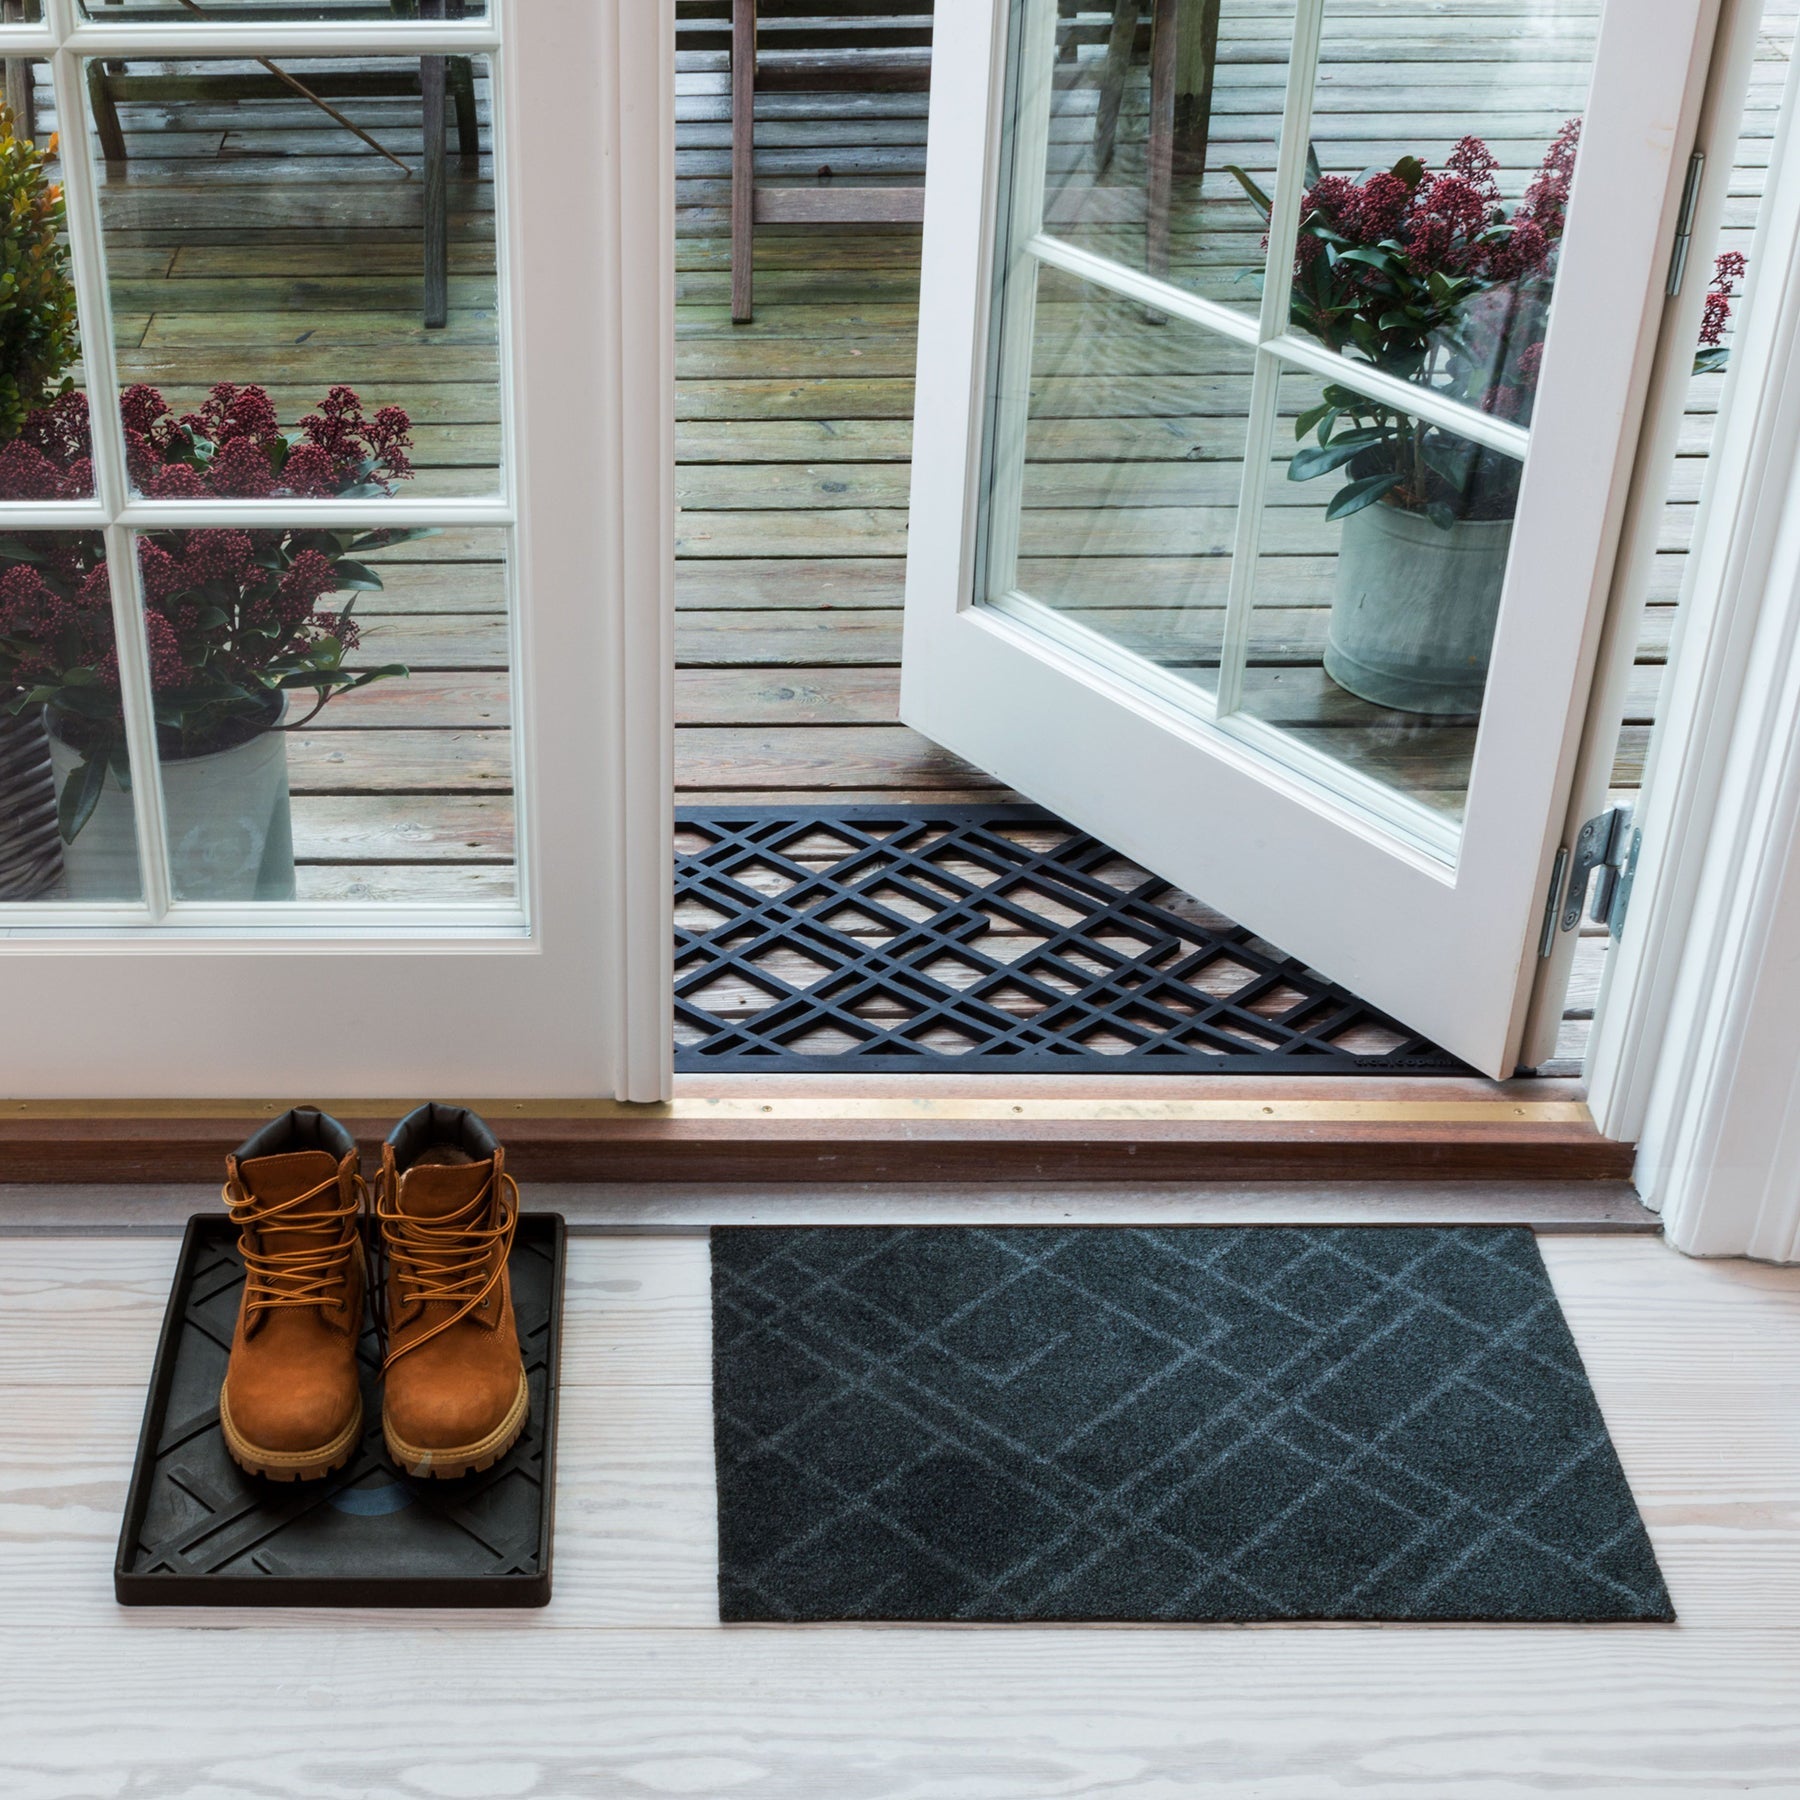 Floor mat 40 x 60 cm - Lines/Dark Gray